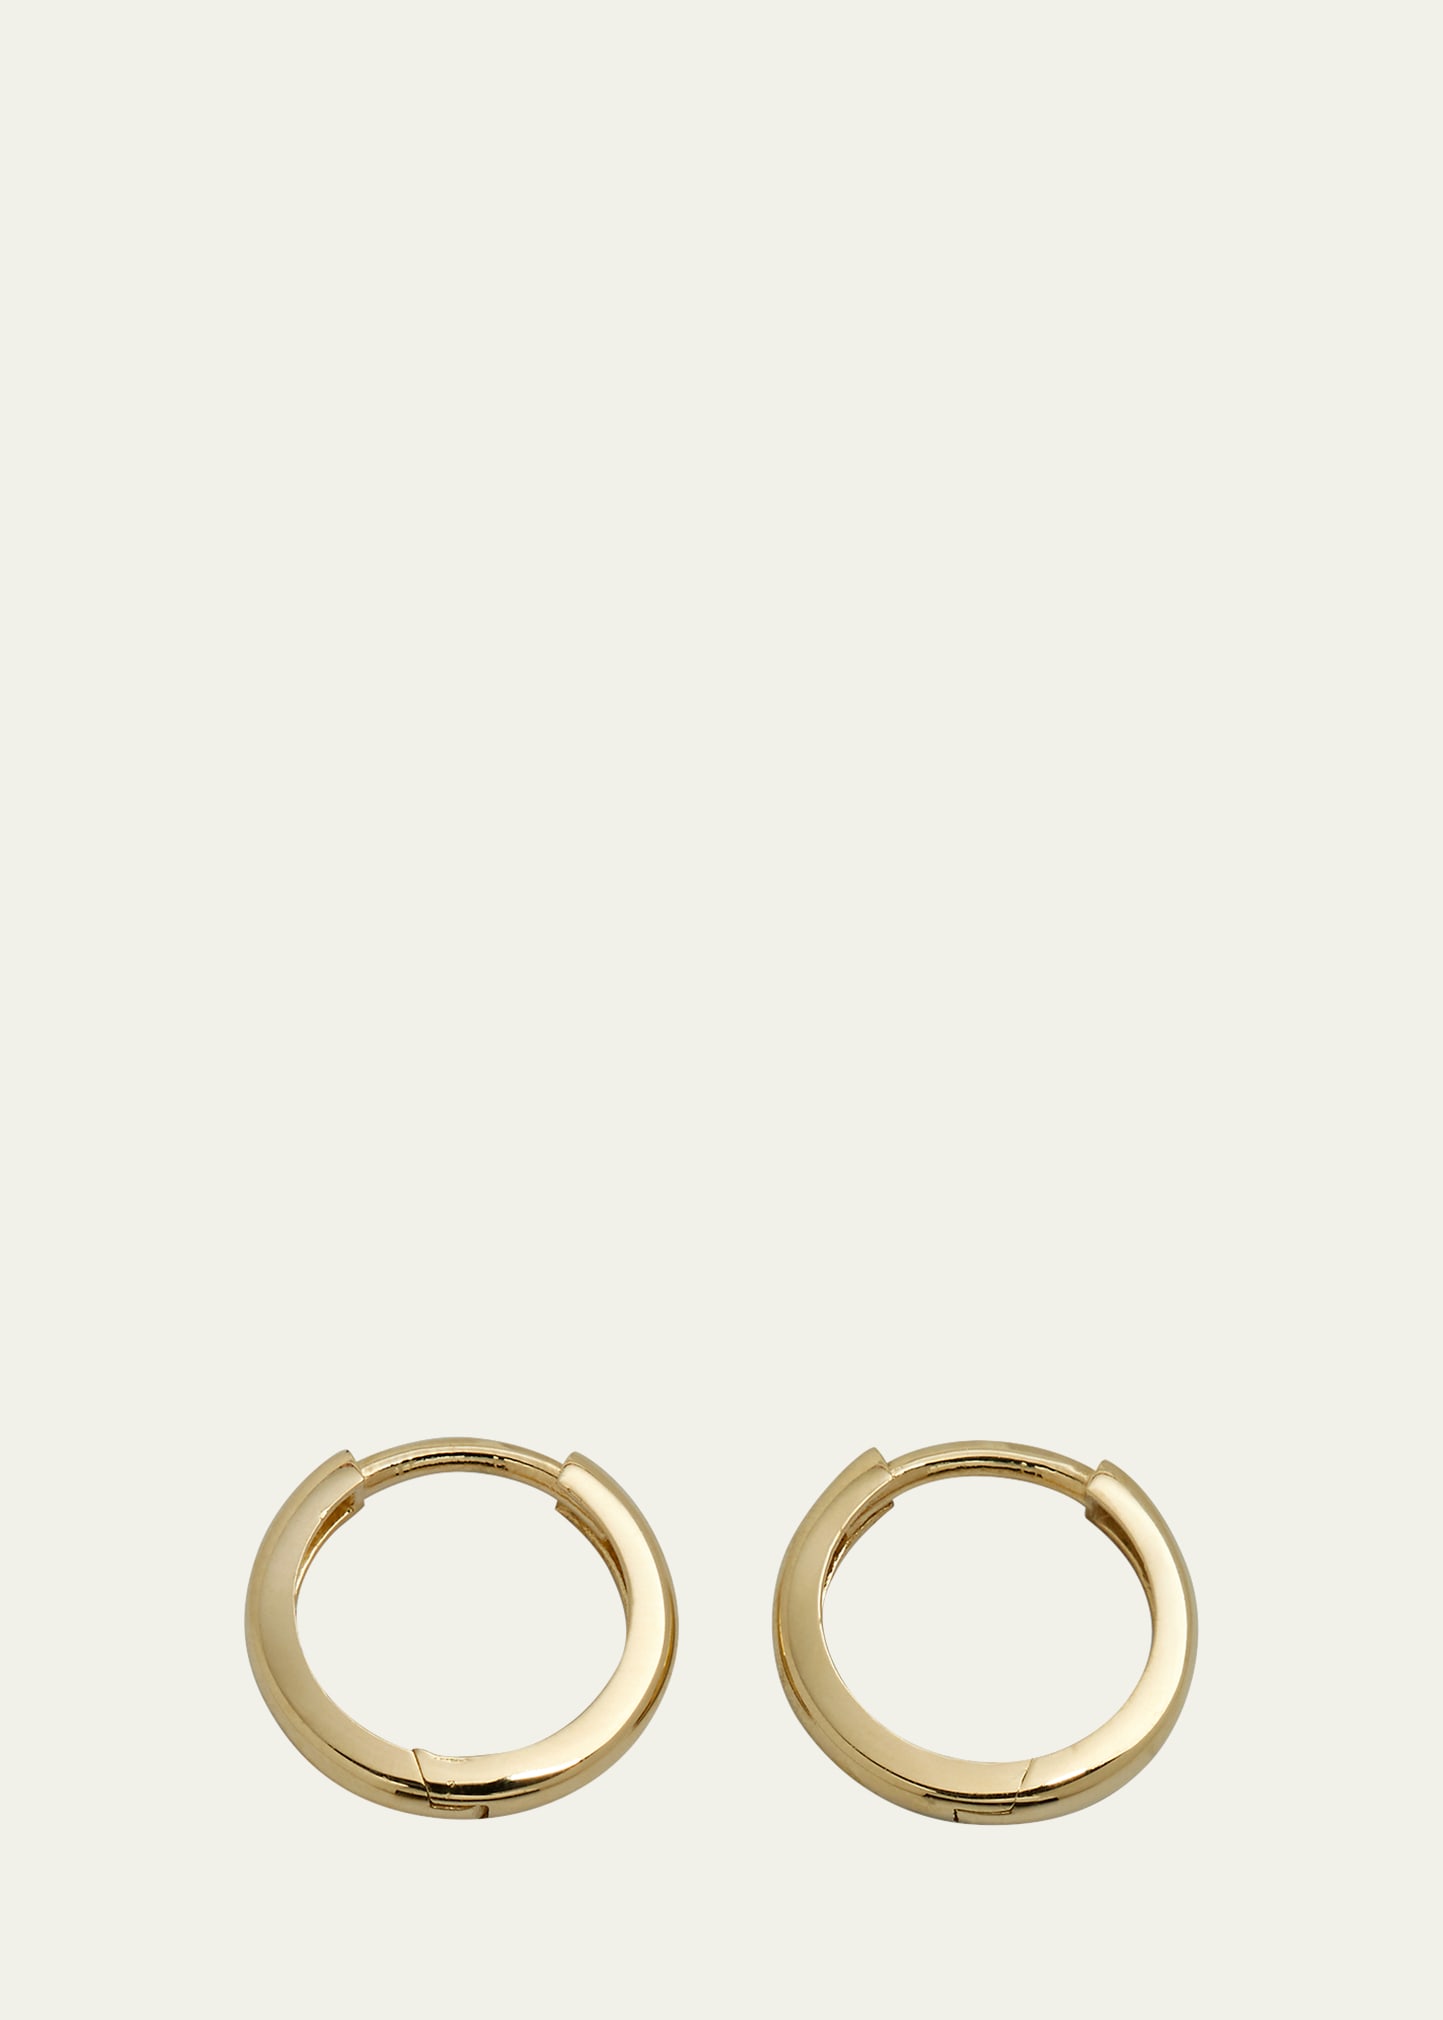 Zoe Lev Jewelry 14k Gold Small Huggie Earrings